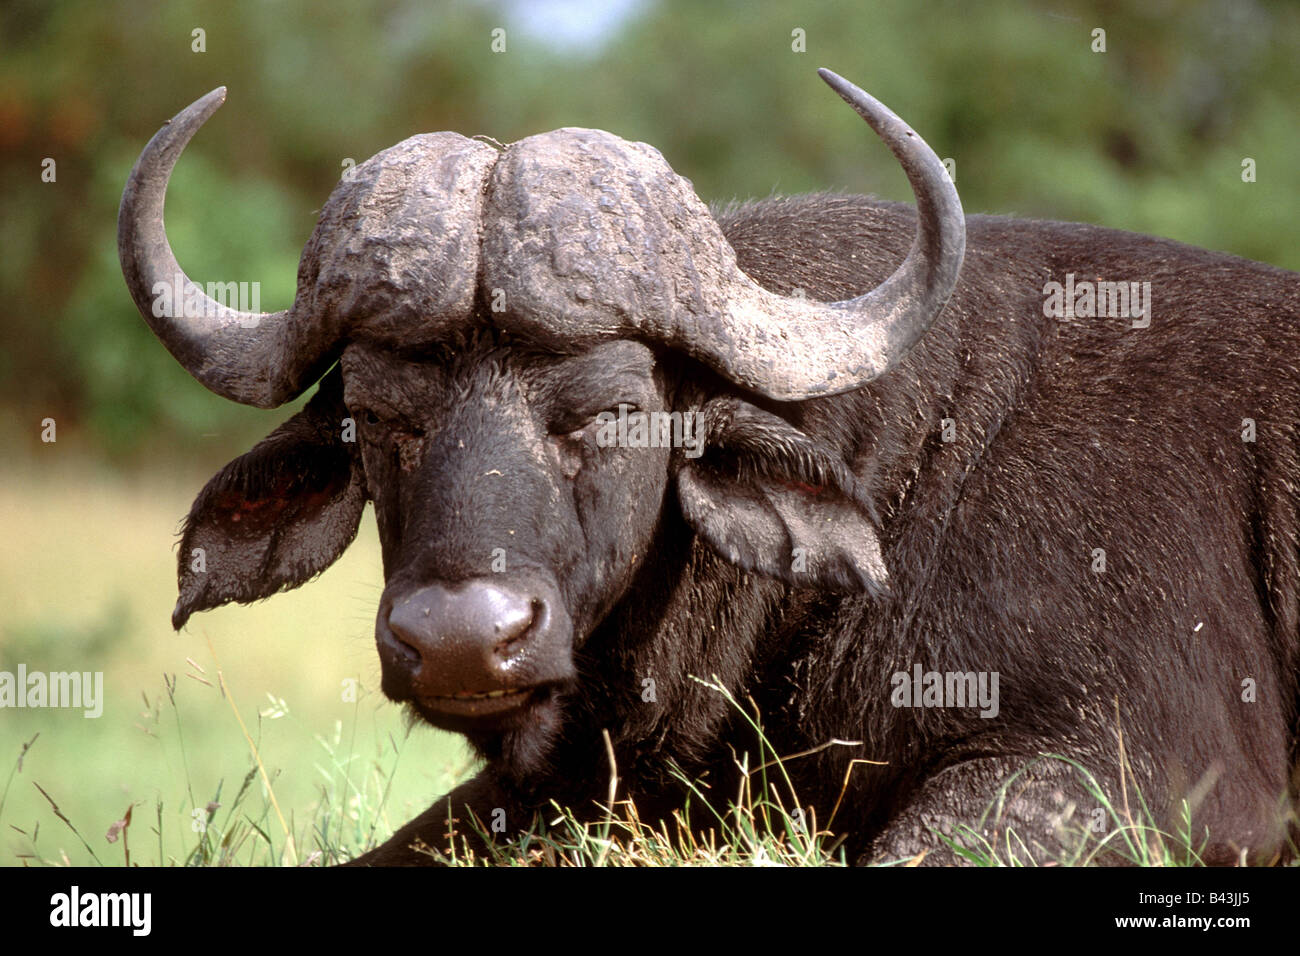 El búfalo africano Syncerus caffer retrato Foto de stock